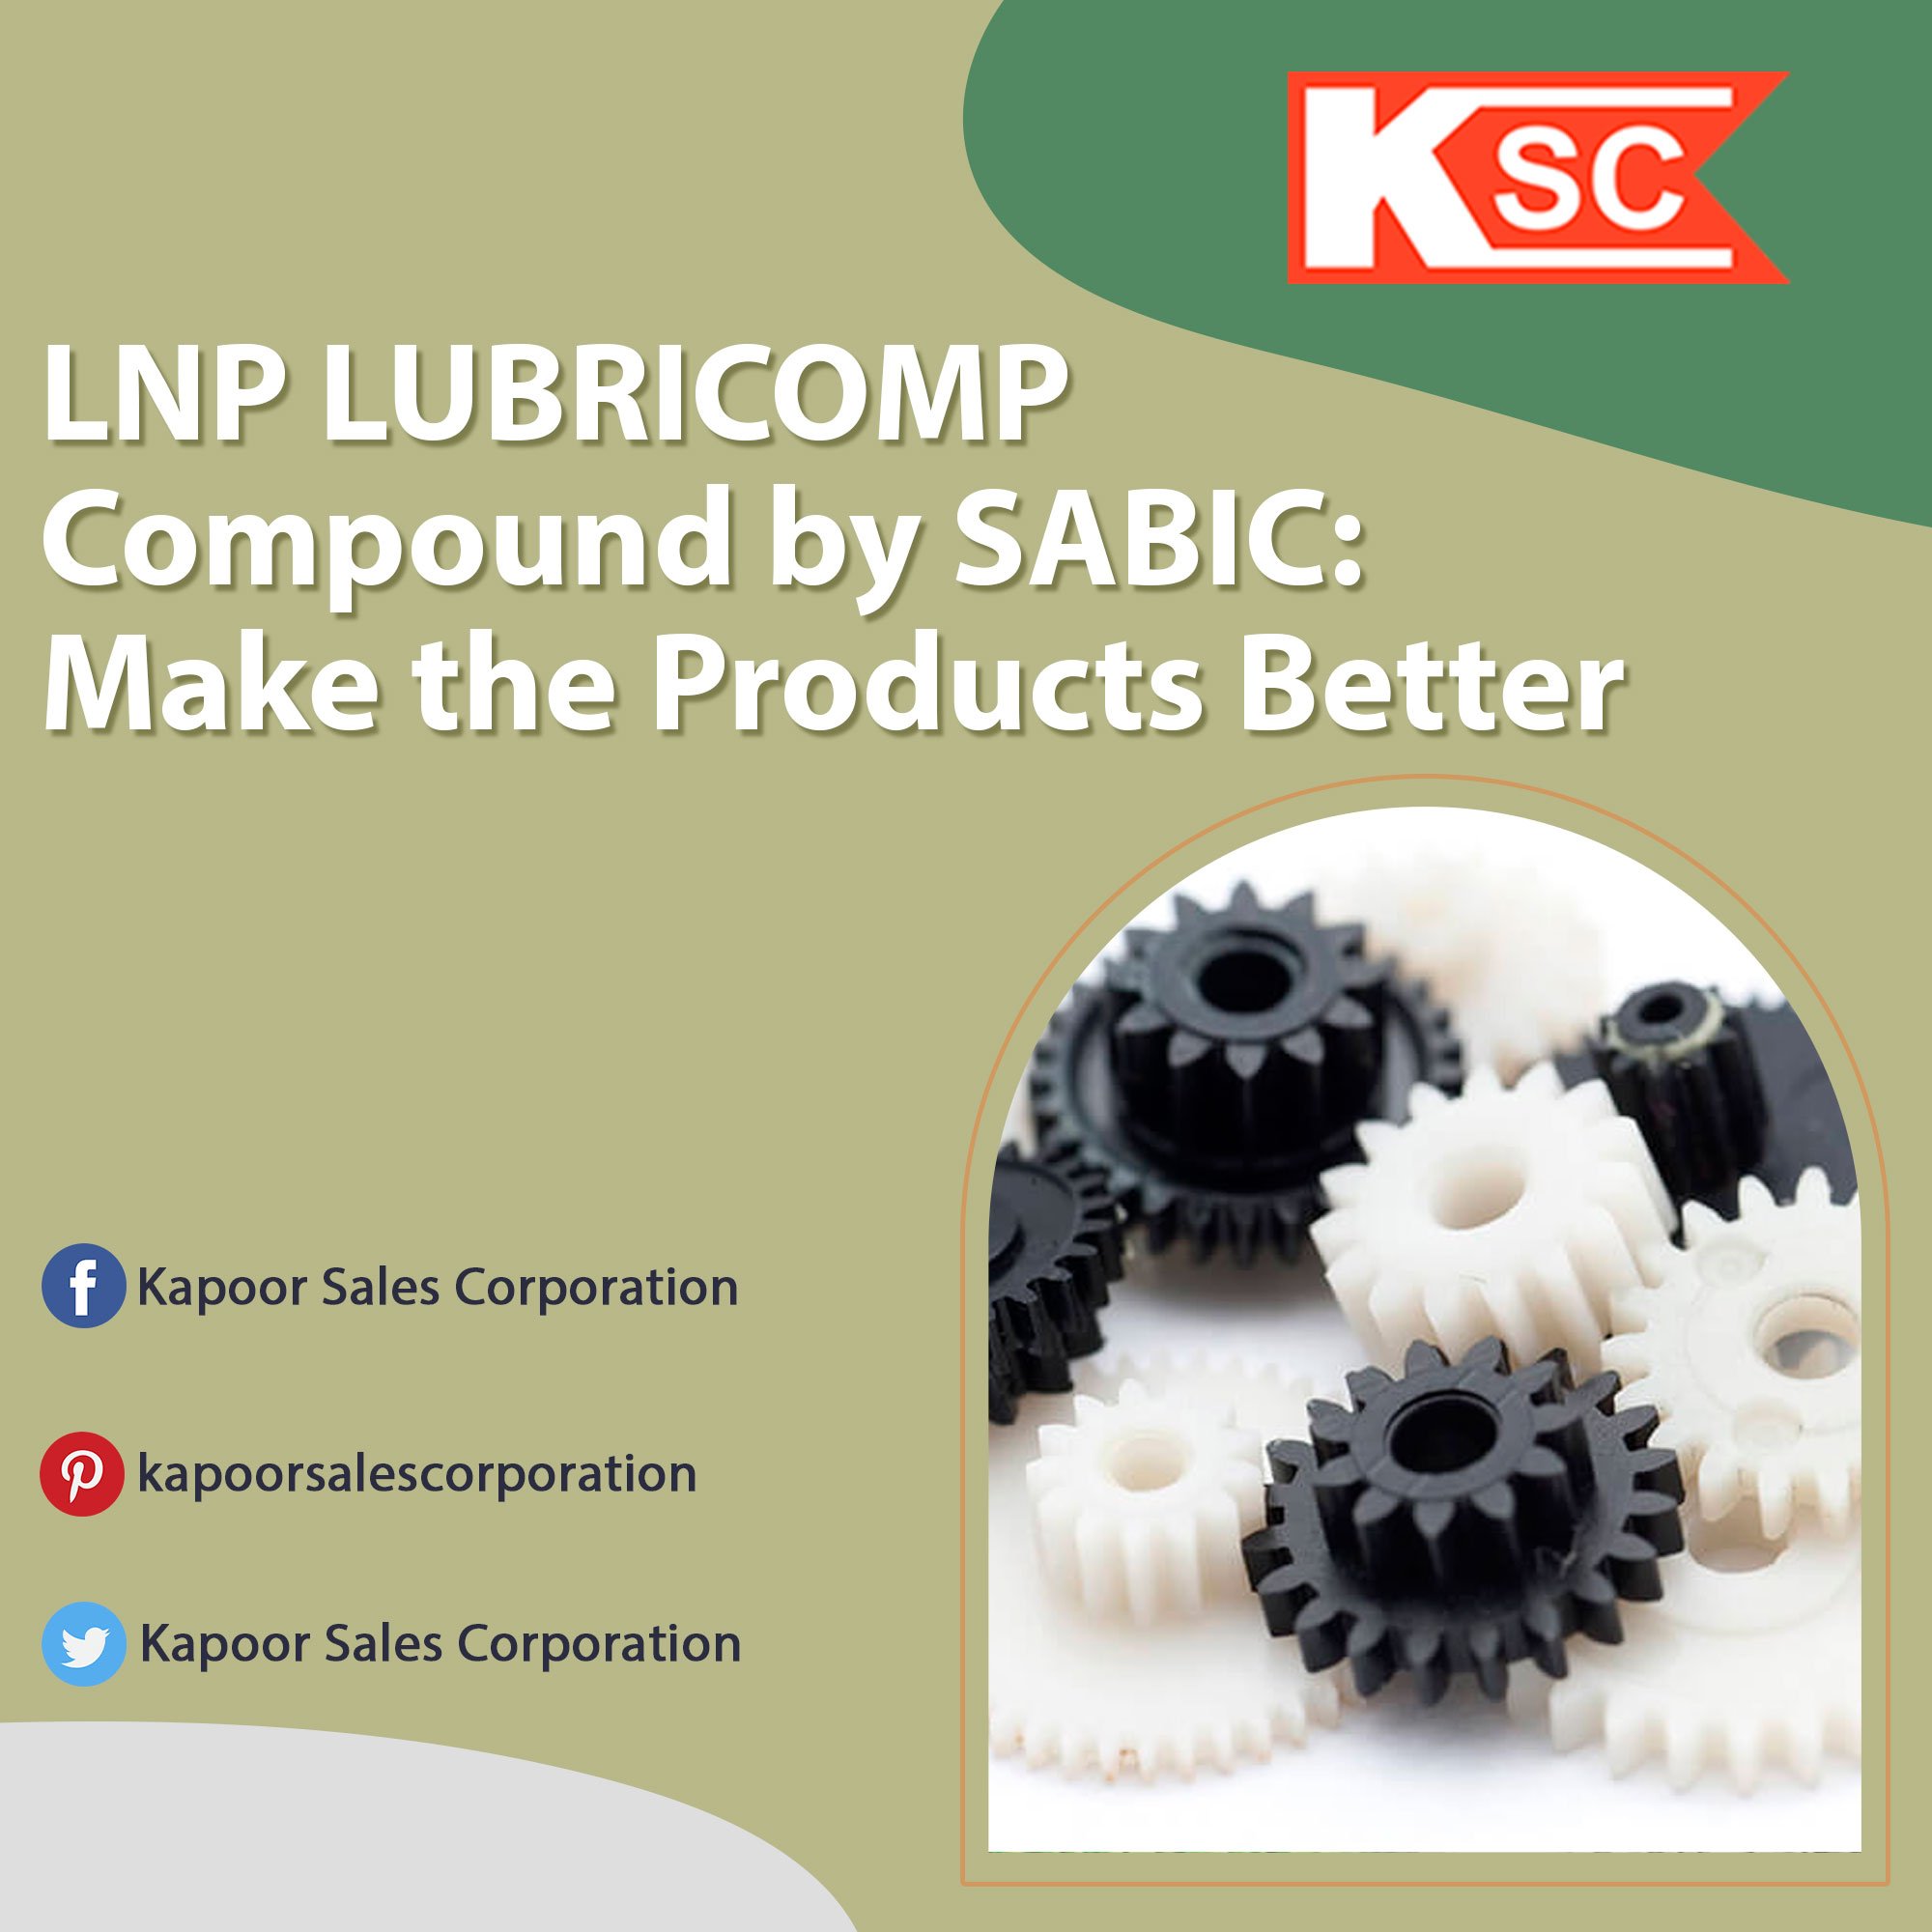 LNP LUBRICOMP compounds